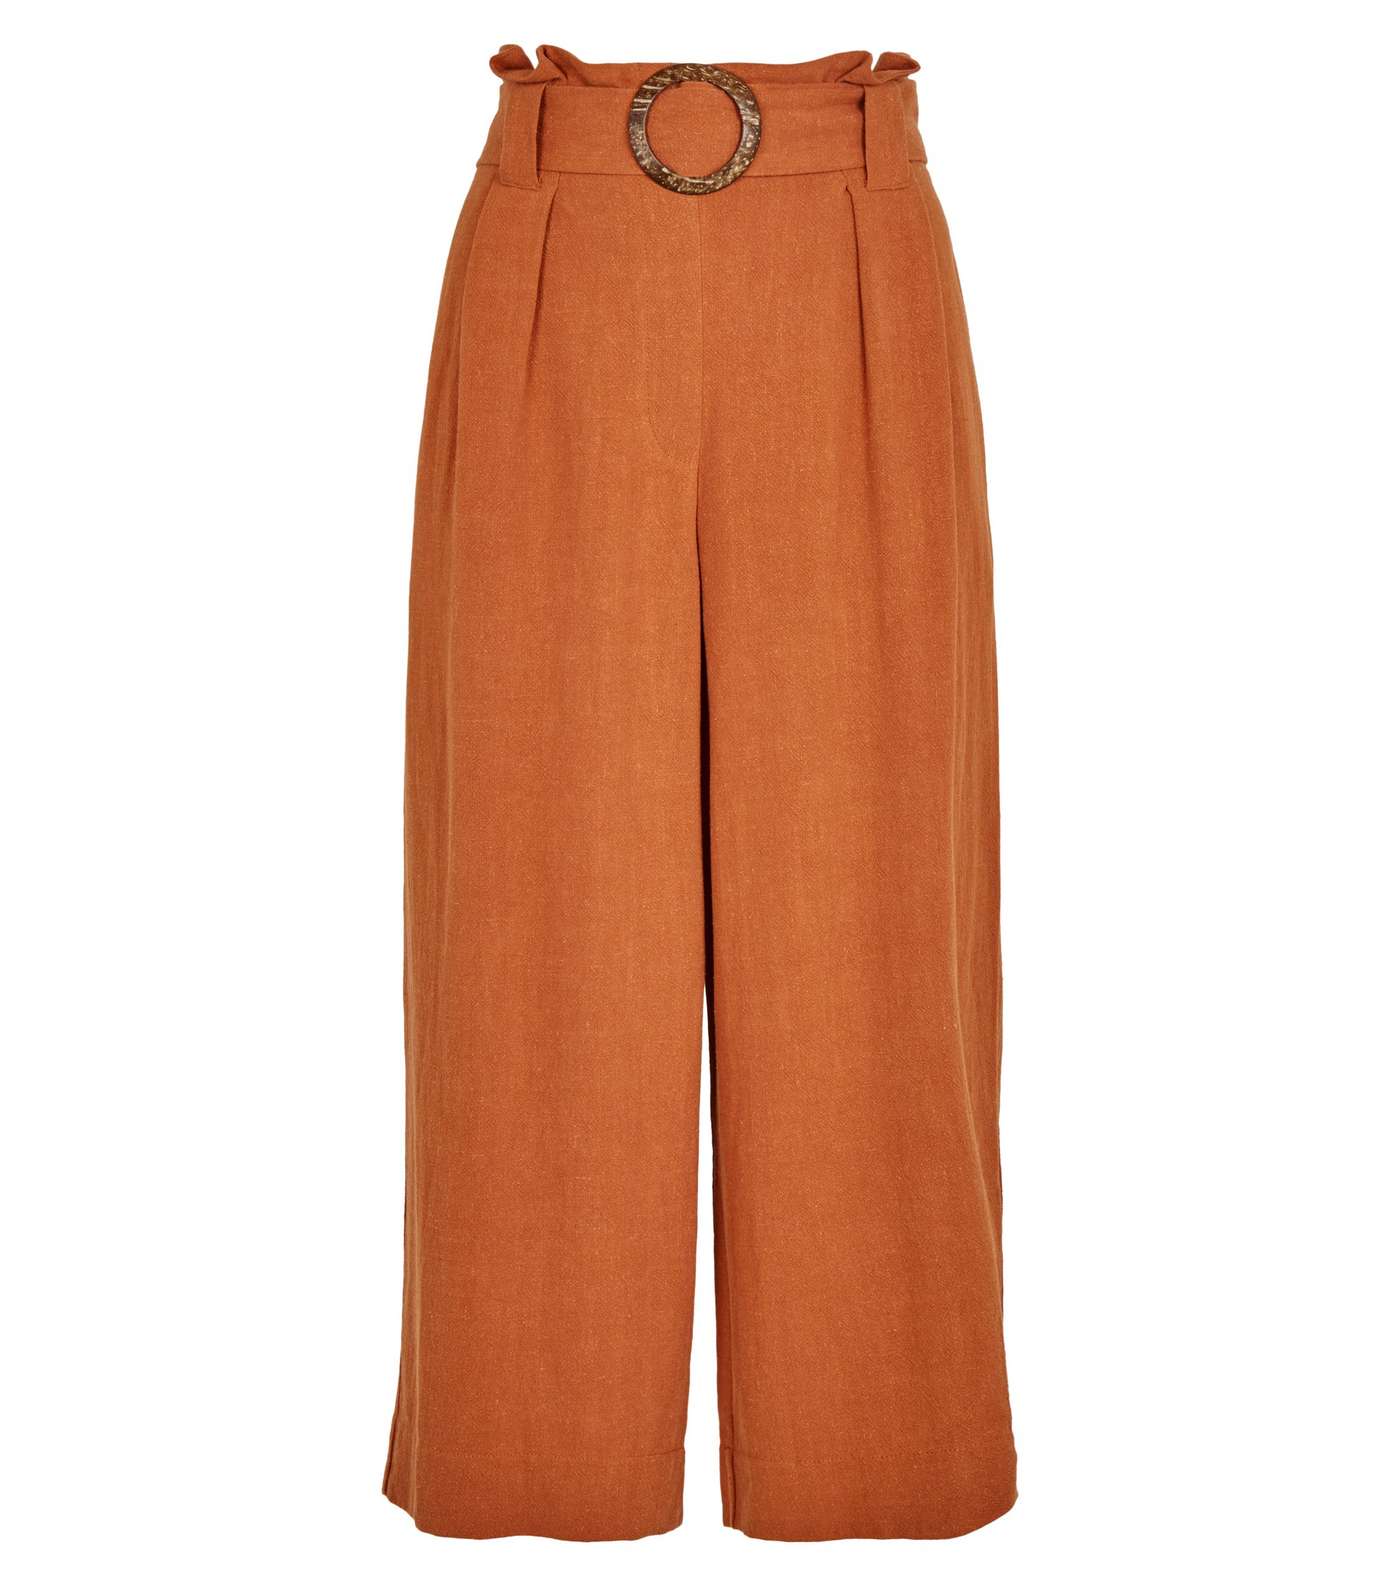 Petite Rust Linen Look Crop Trousers  Image 4